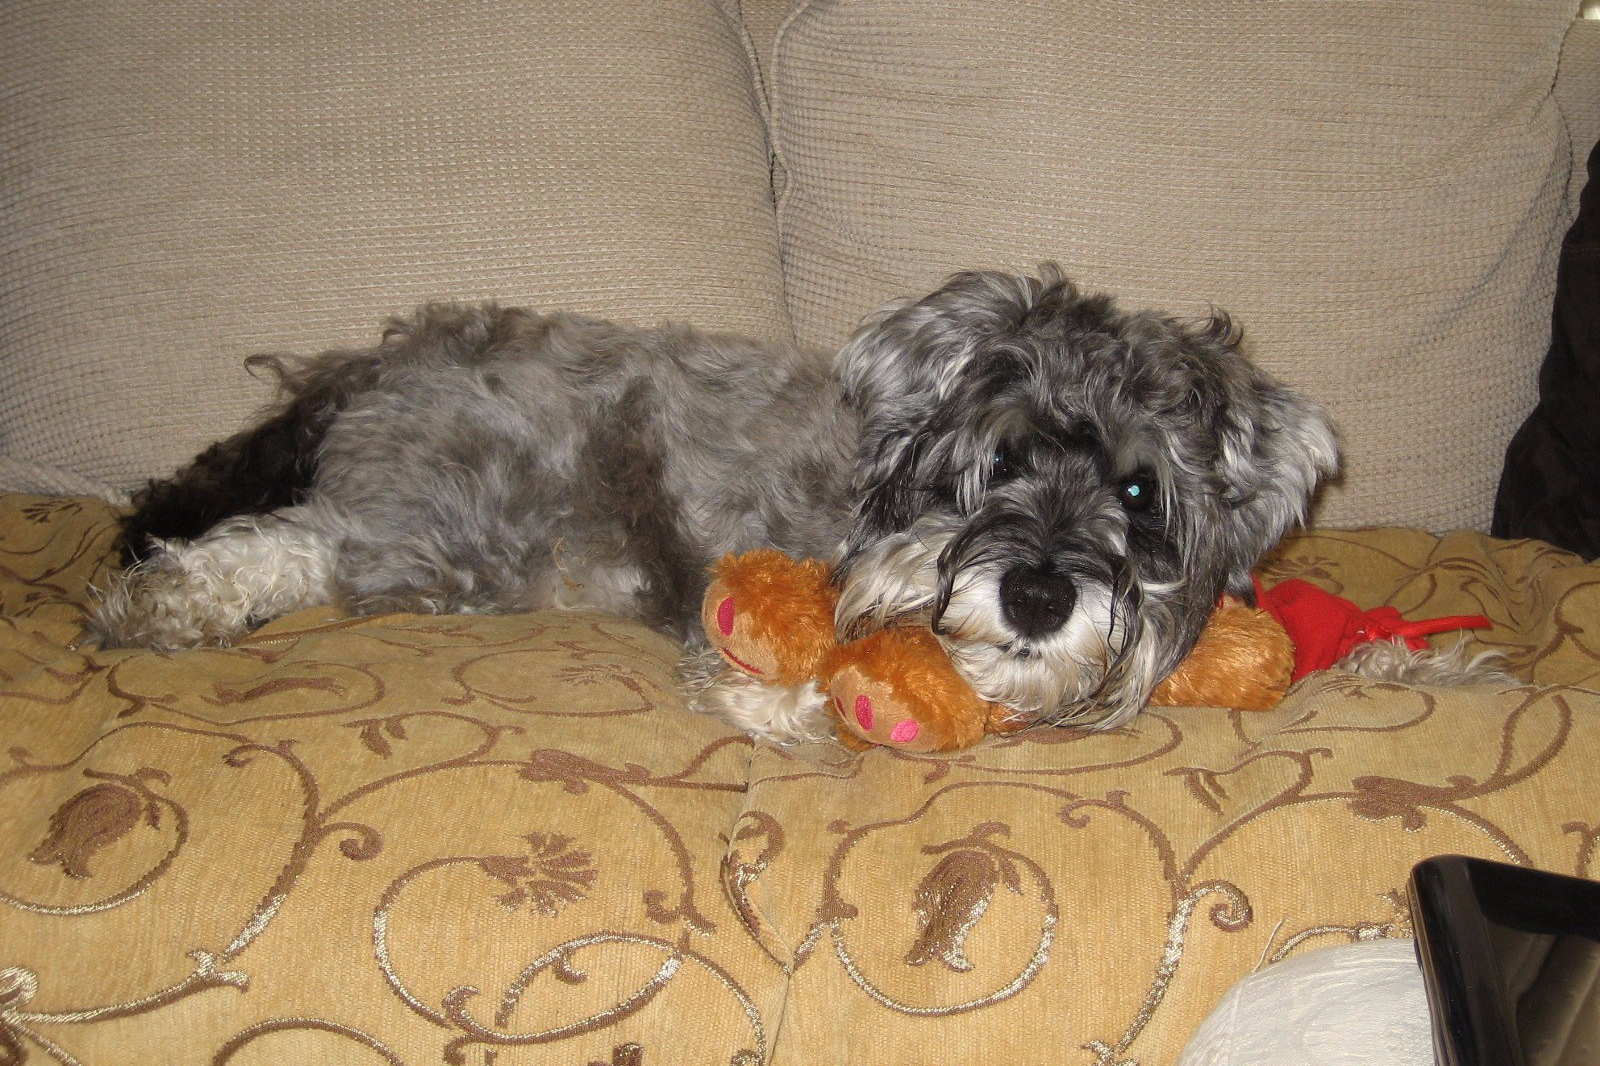 Little Bear on sofa with his teddy